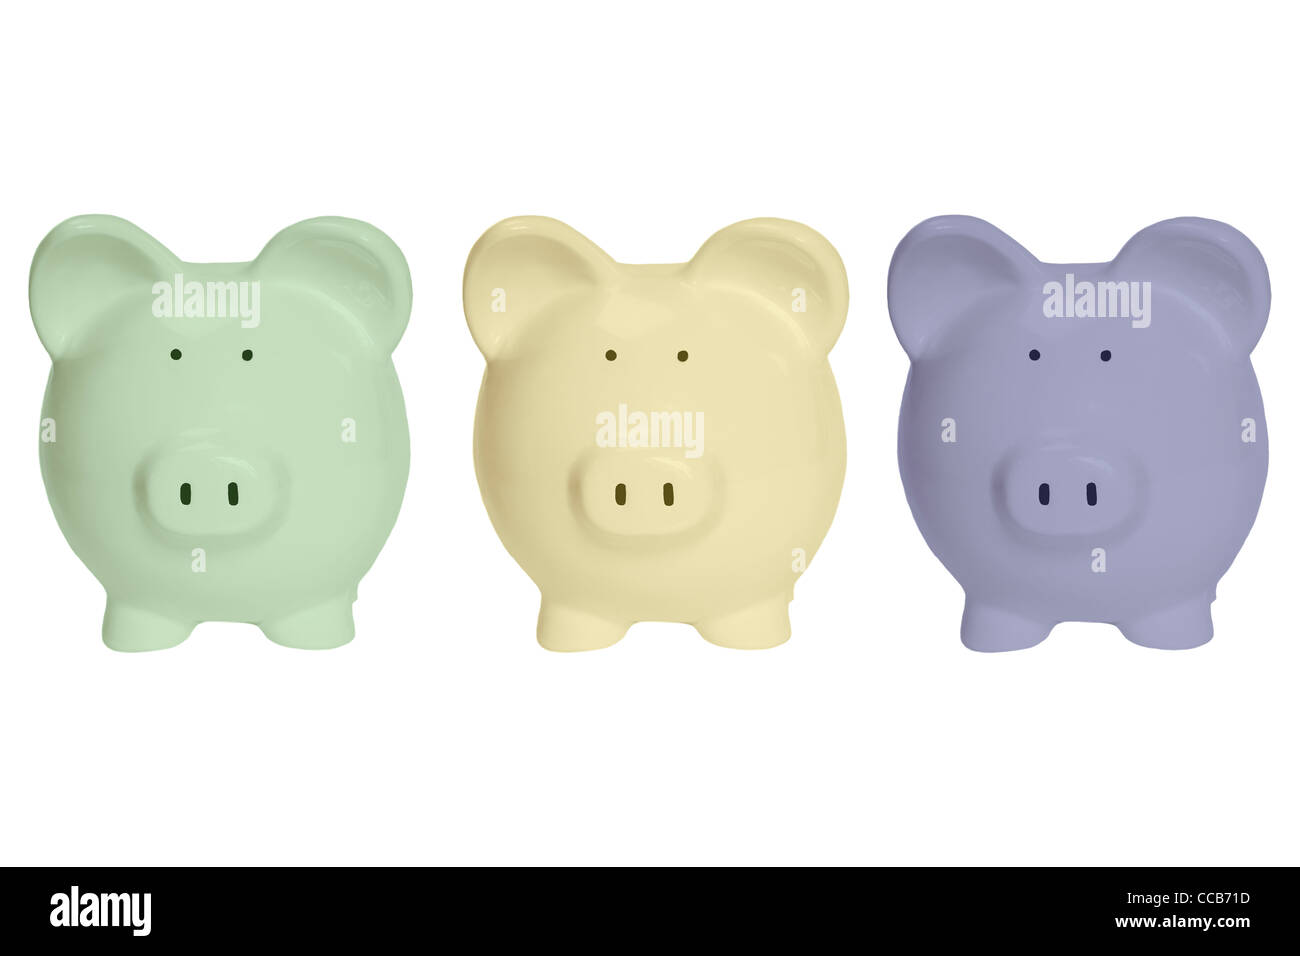 Detailansicht von drei bunten Sparschweinen | photo de détail trois tirelires de couleur Banque D'Images